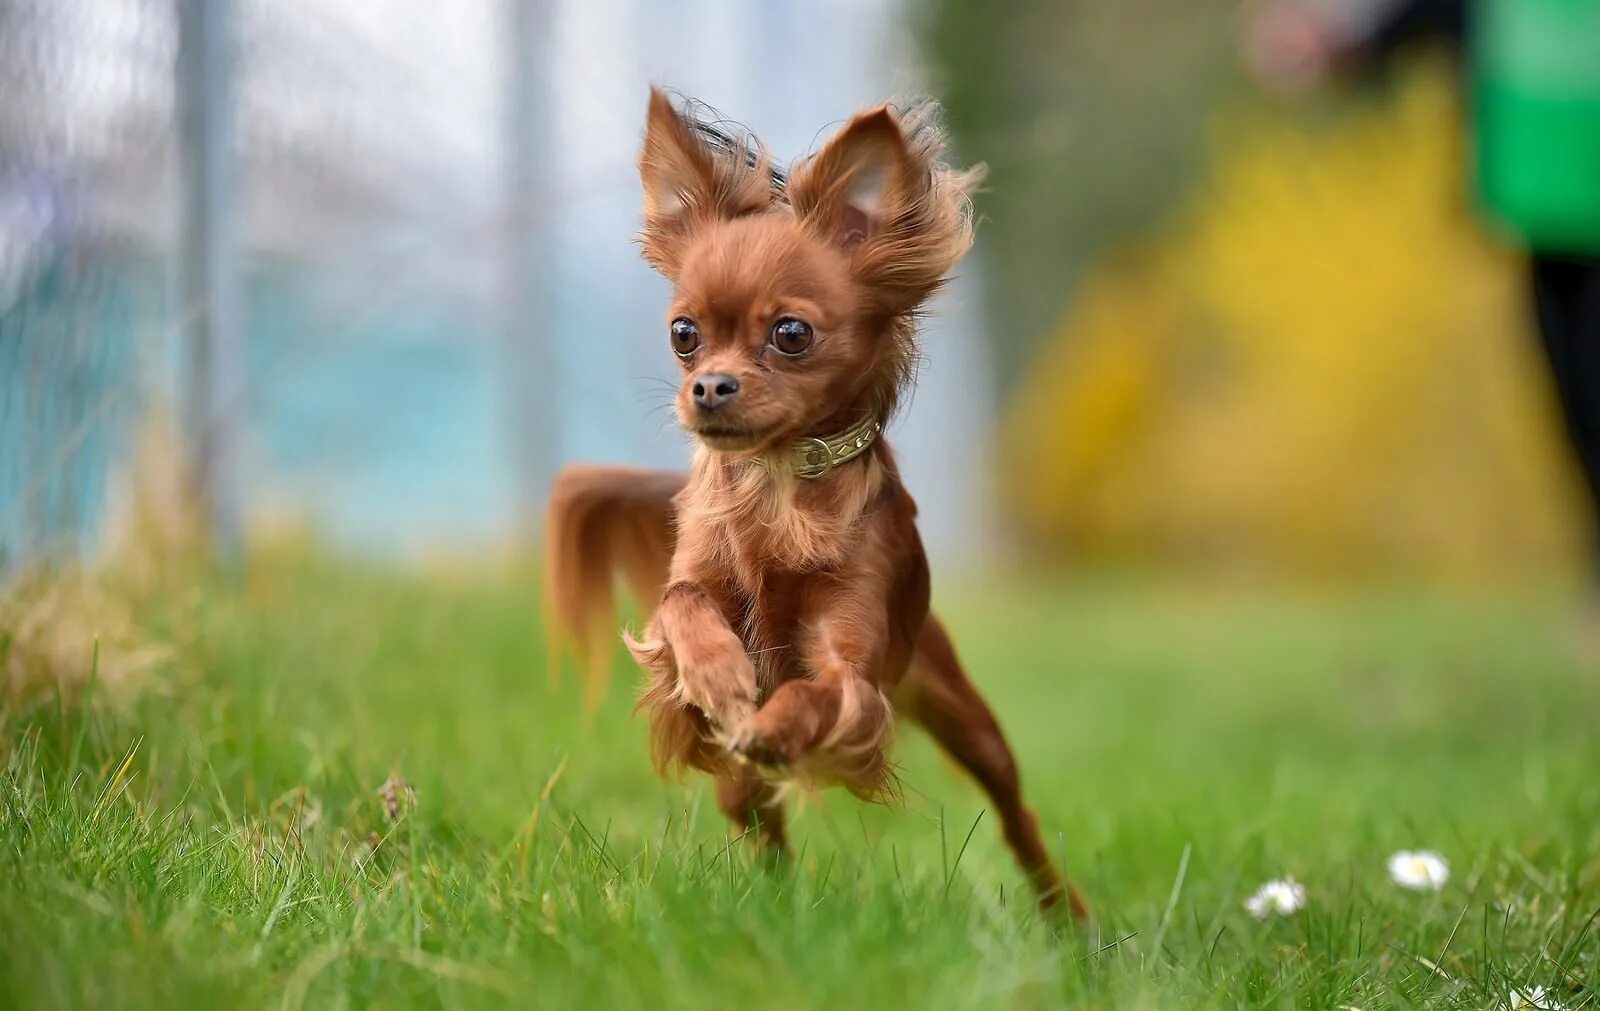 Название породы самой маленькой собаки. Рыжий чихуахуа тойтерьер. Лисий пинчер длинношерстный. Той терьер коротконогий. Собака русский той терьер.